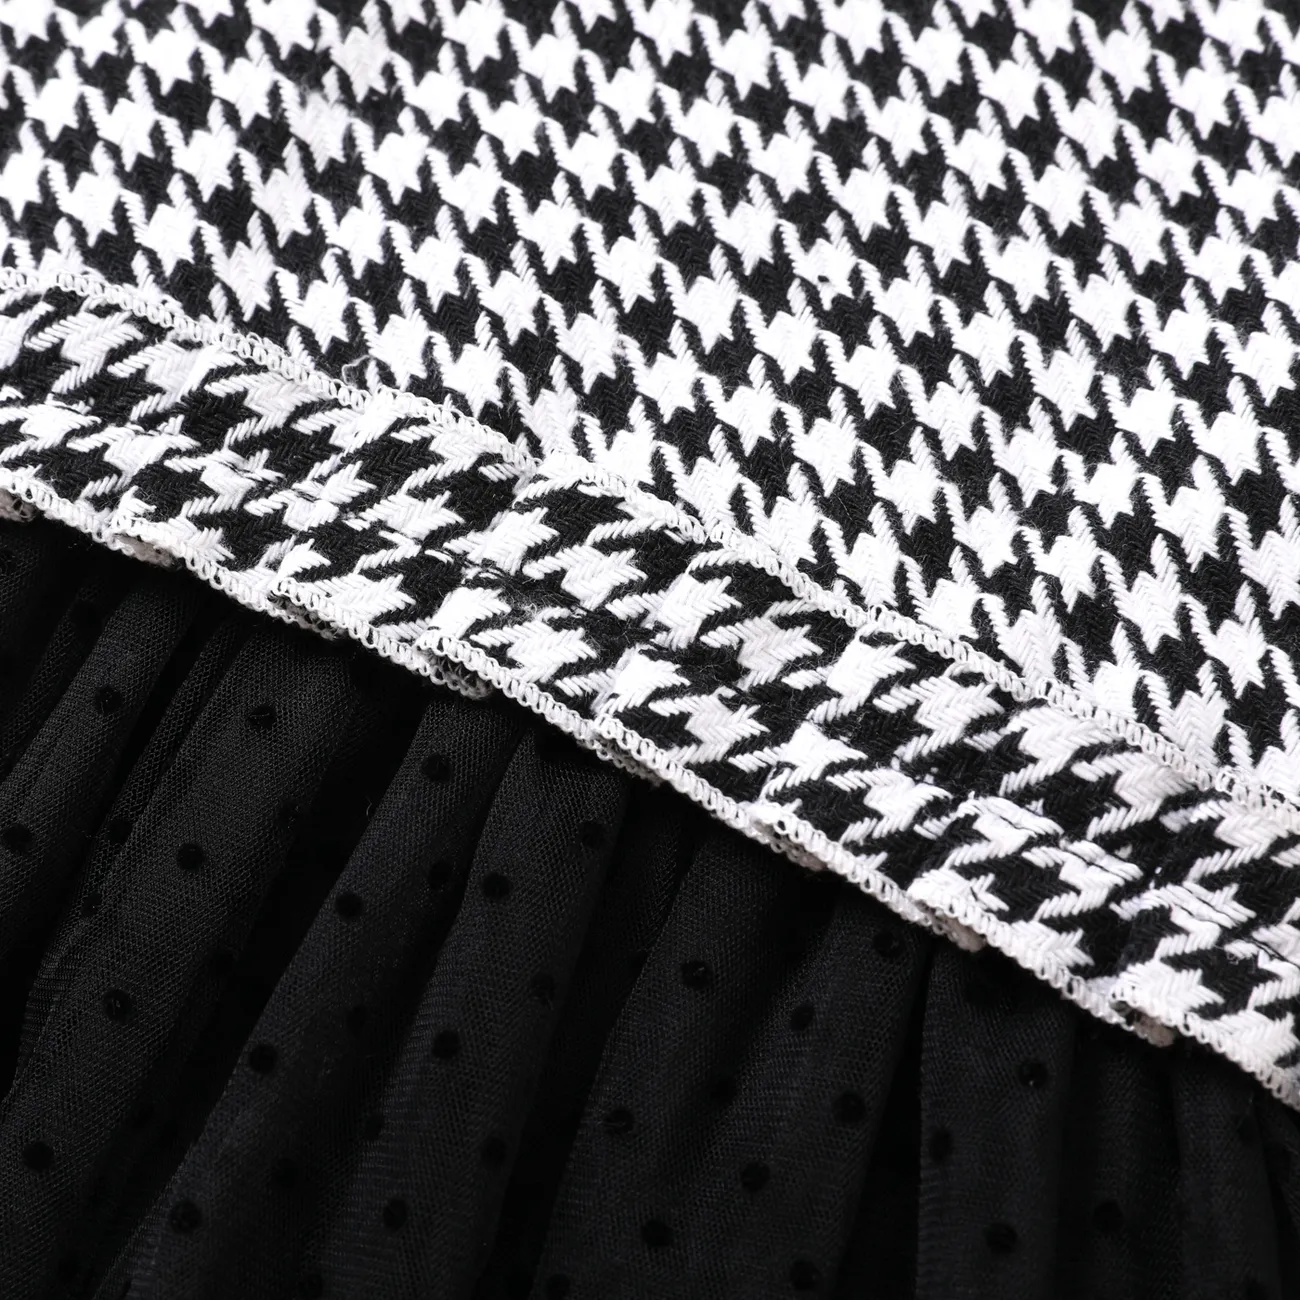 طقم فستان أطفال من قطعتين كارديجان منقوش بأكمام طويلة مع فستان شبكي توتو أسود / أبيض big image 1